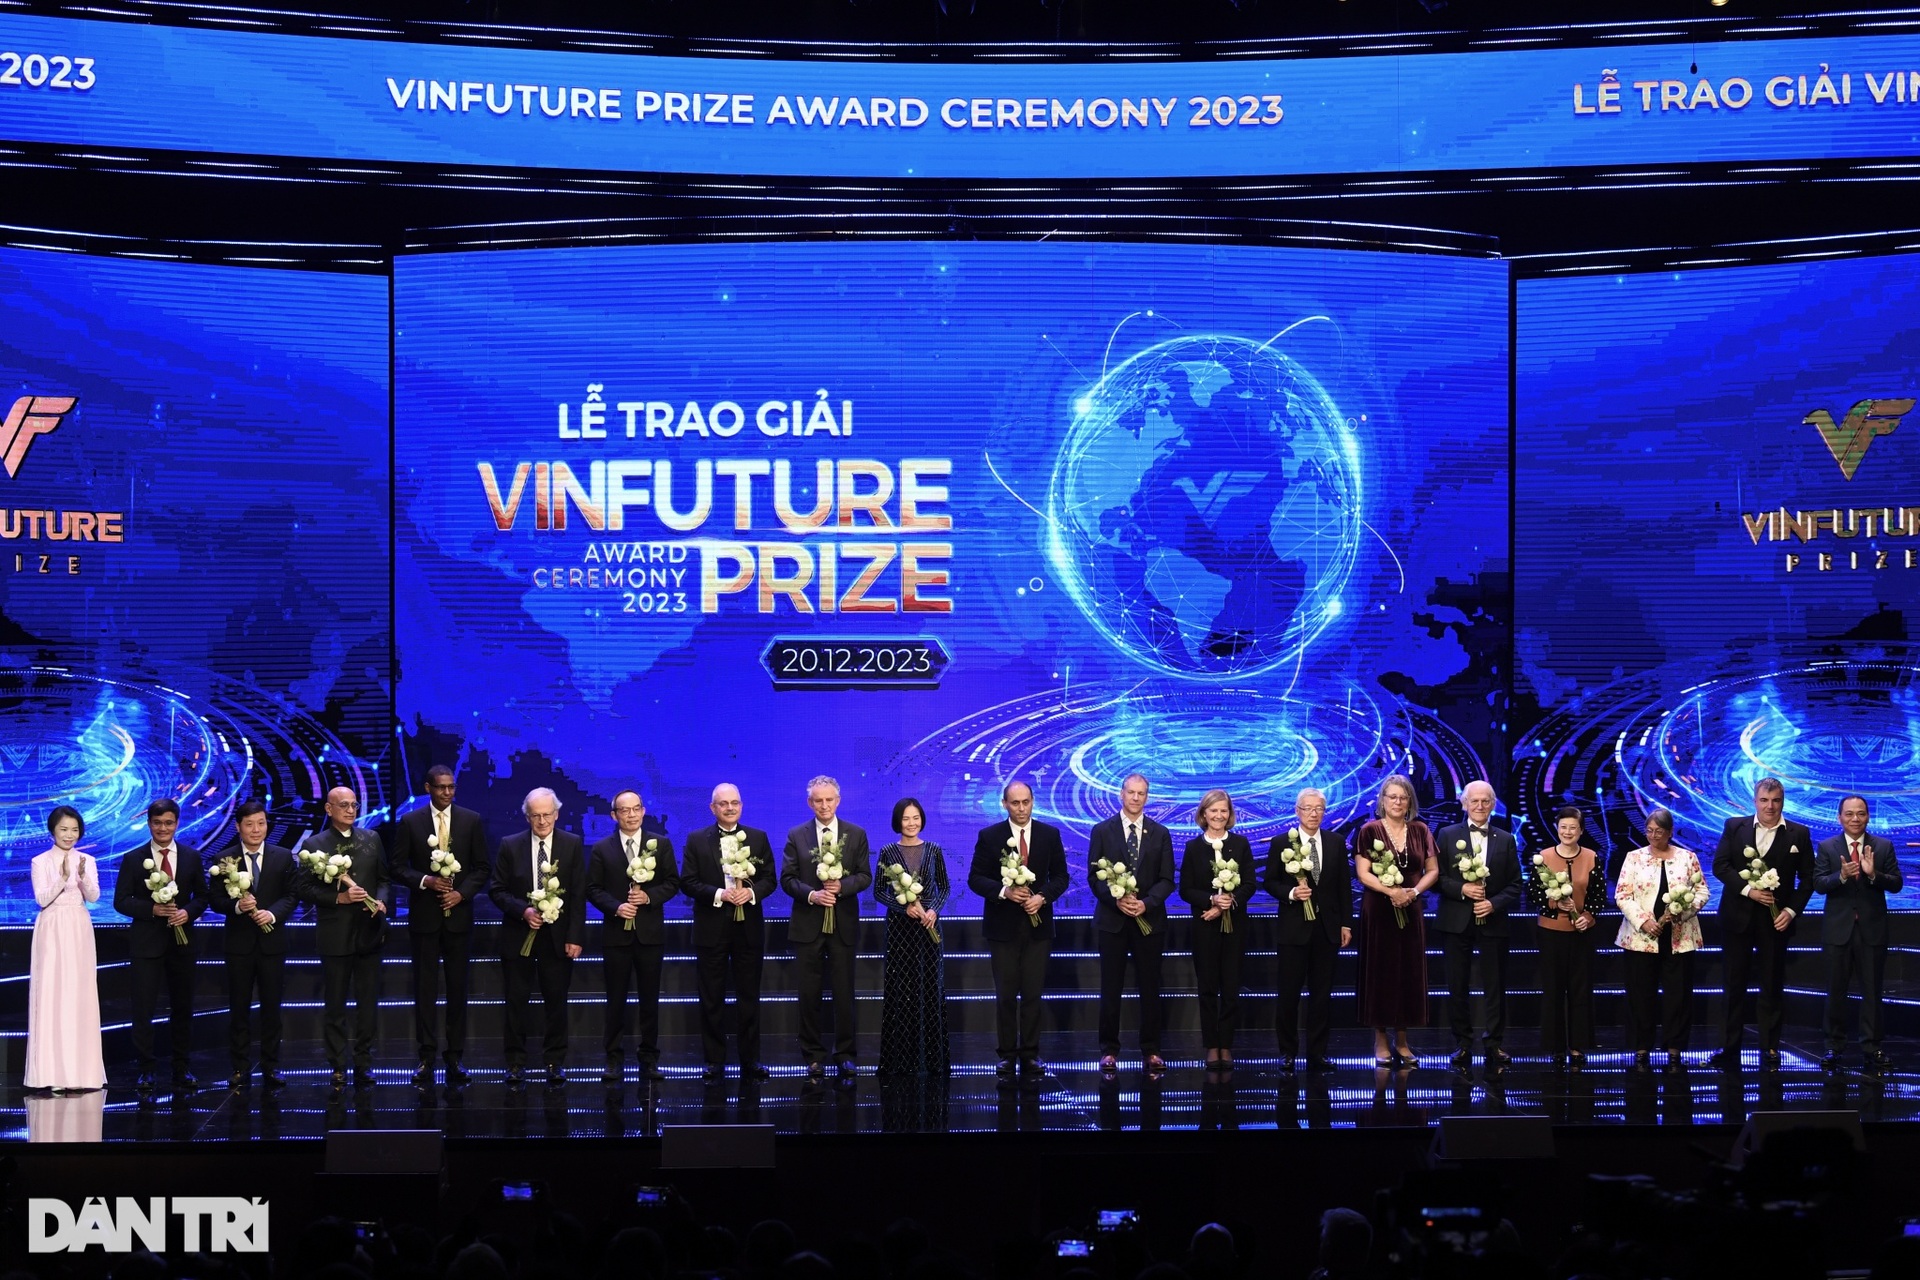 Toàn cảnh Lễ trao giải VinFuture 2023 vinh danh các nhà khoa học xuất chúng - 6